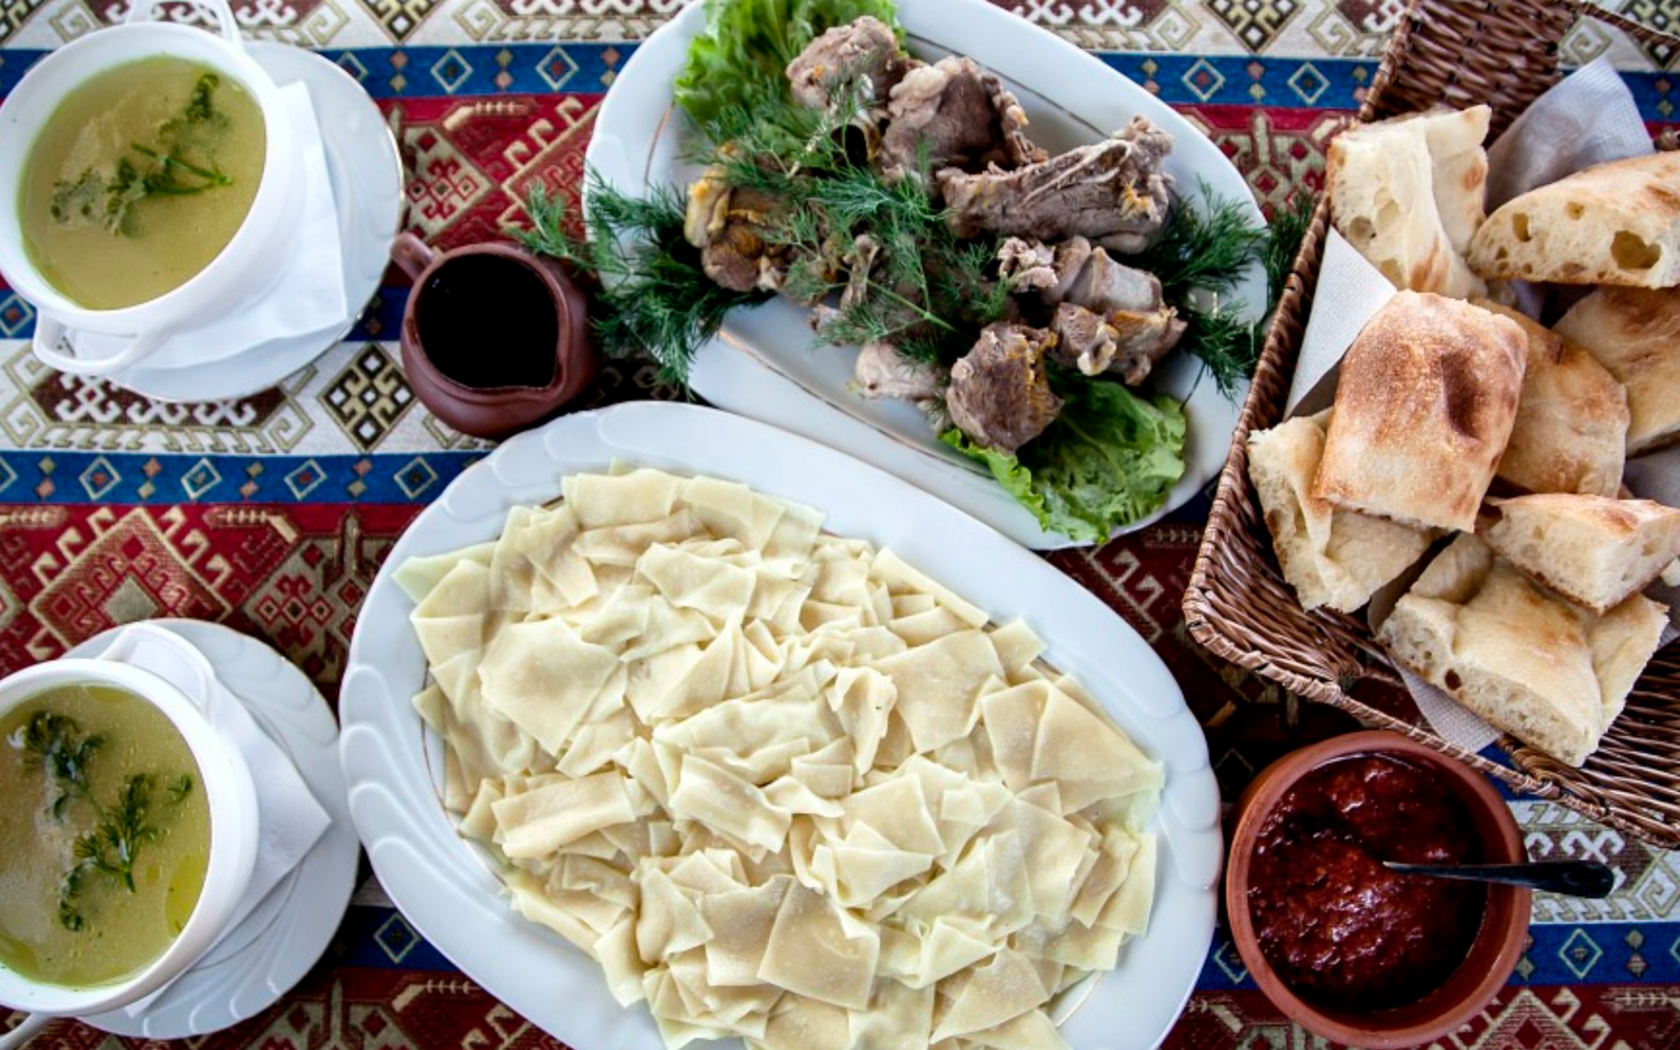 Парный хинкал. Хинкал Дагестанский Лакский. Национальная кухня Дагестана хинкал. Дагестанское блюдо хинкал. Национальная еда хинкал Дагестанская.